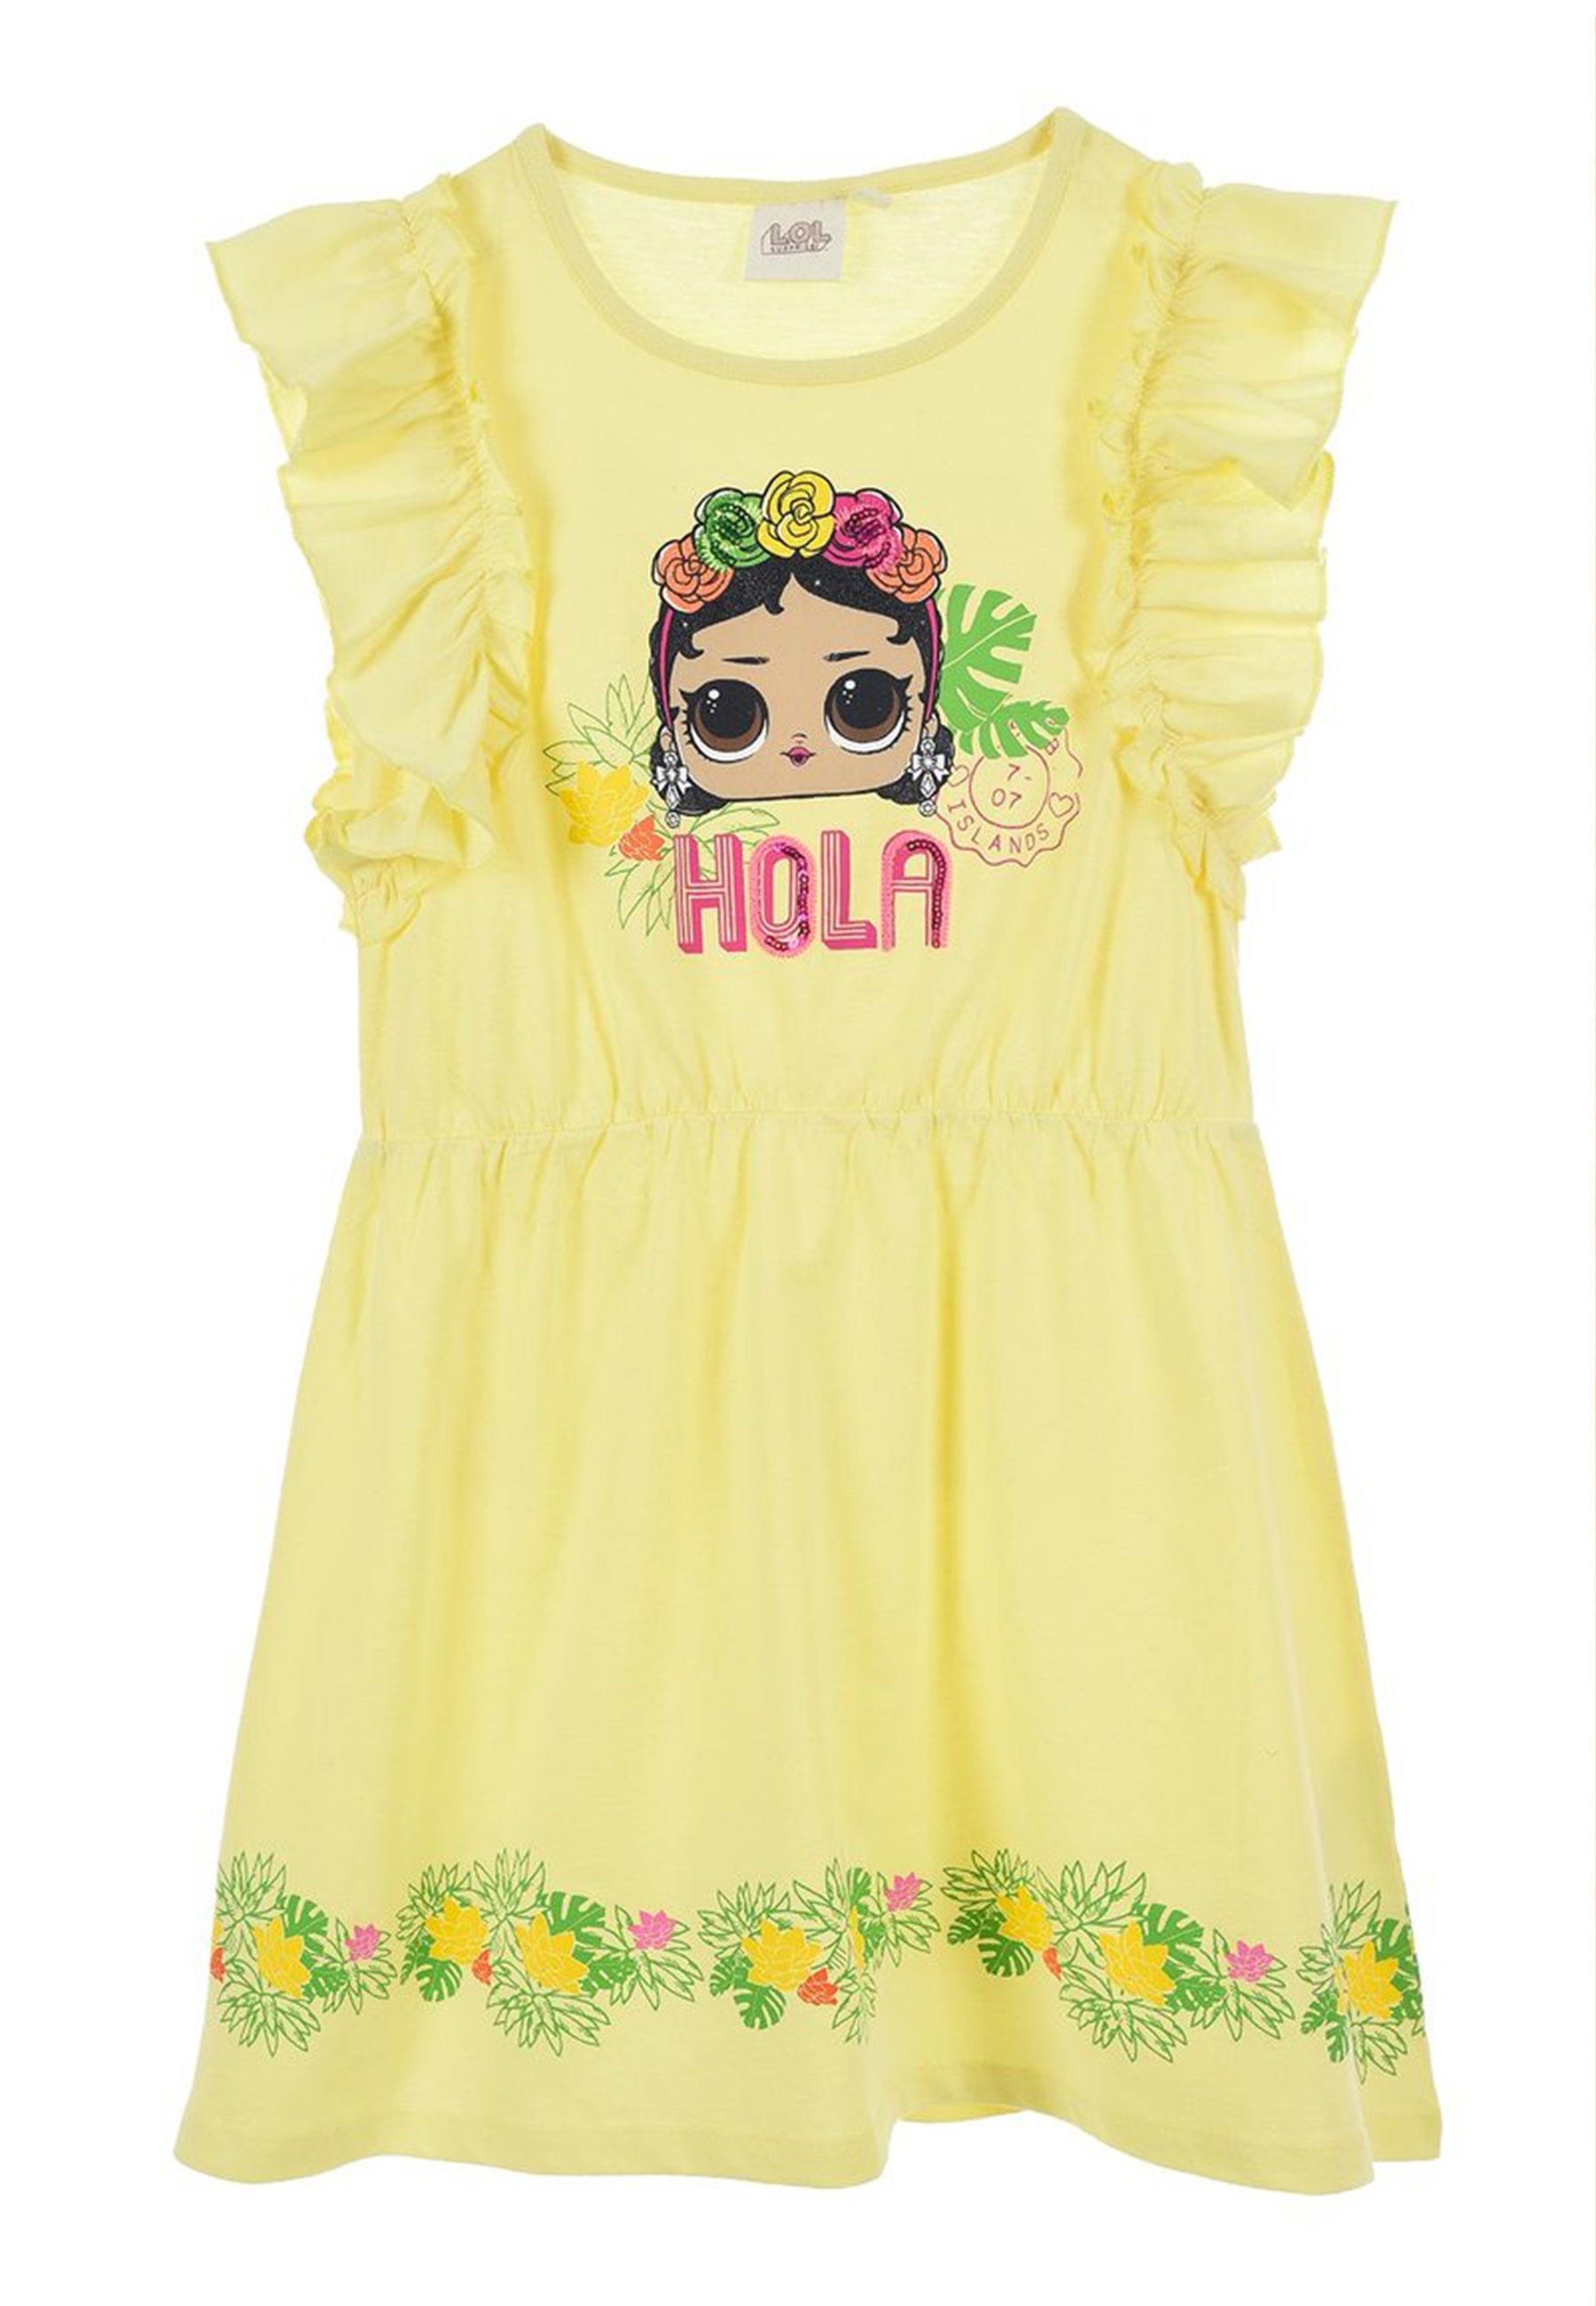 Tüll A-Linien-Kleid Gelb Party-Kleid Mädchen L.O.L. SURPRISE! Sommer-Kleid Kinder